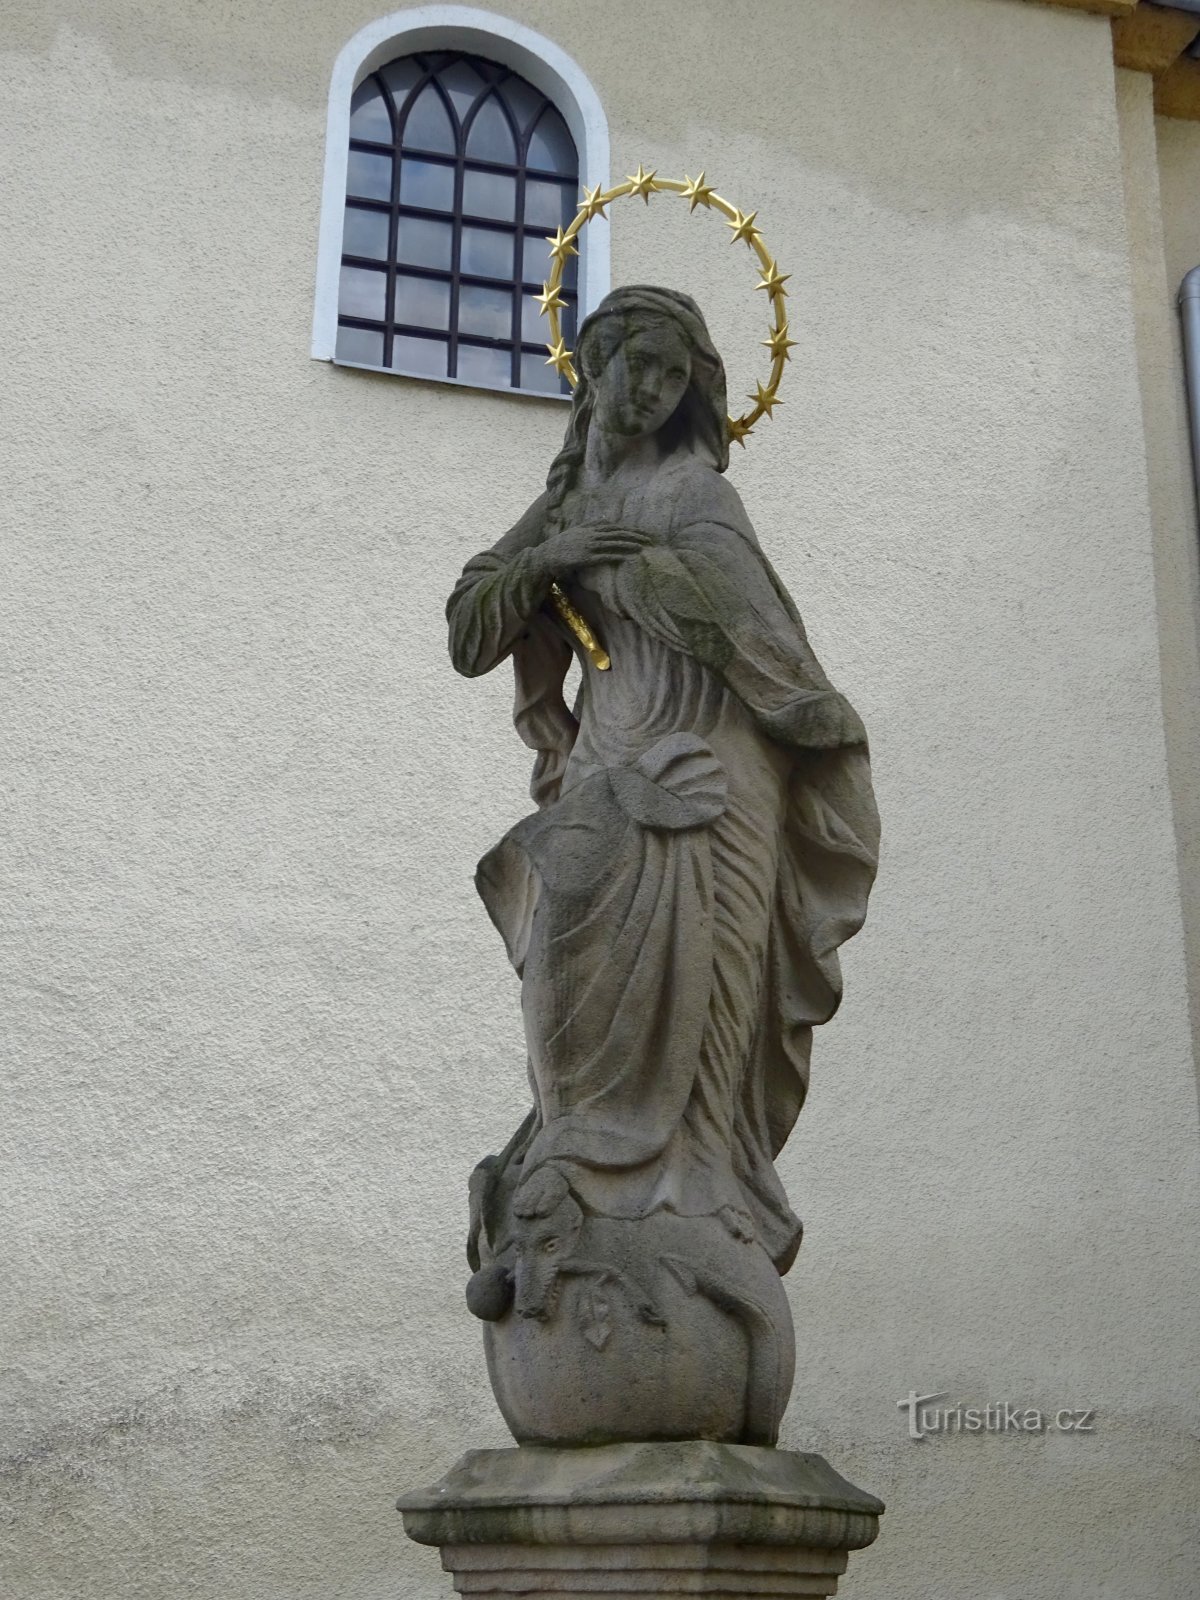 Klimkovice - άγαλμα της Παναγίας